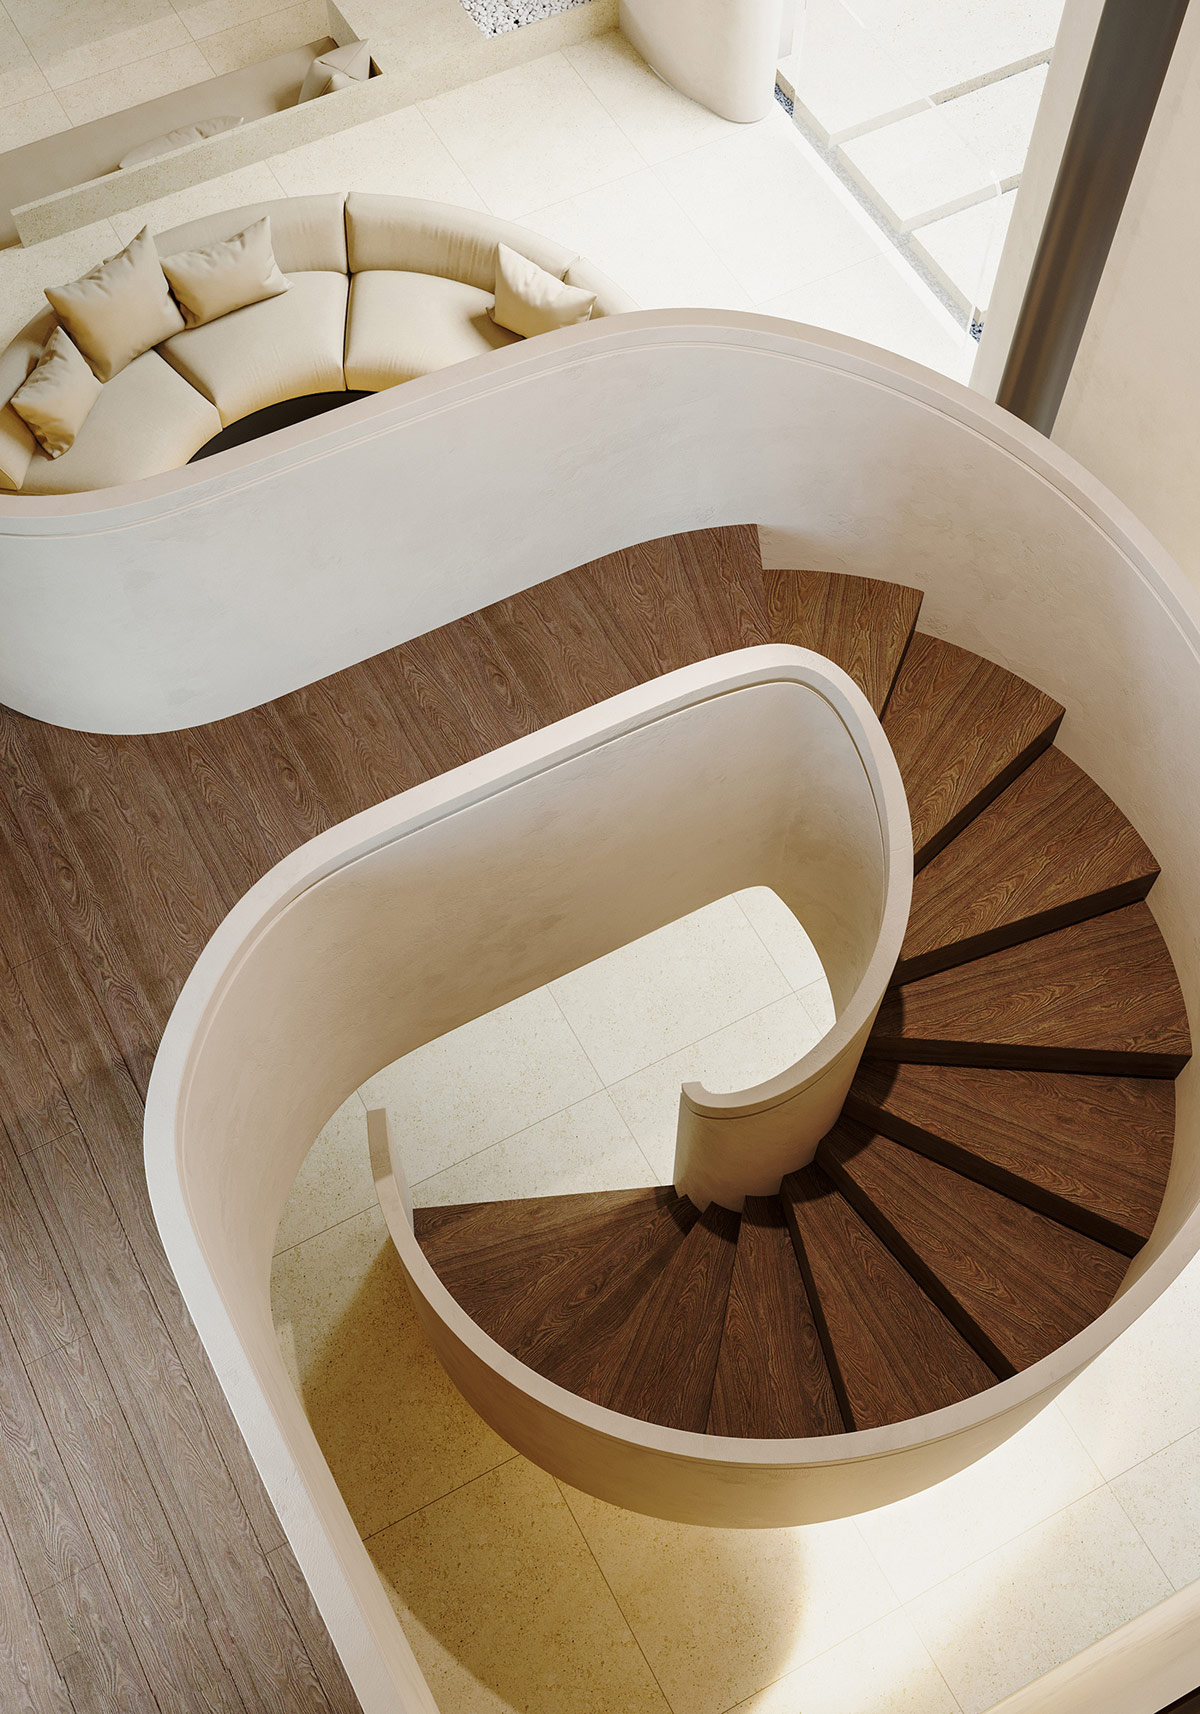 spiral-staircase-design-1-600x857.jpg